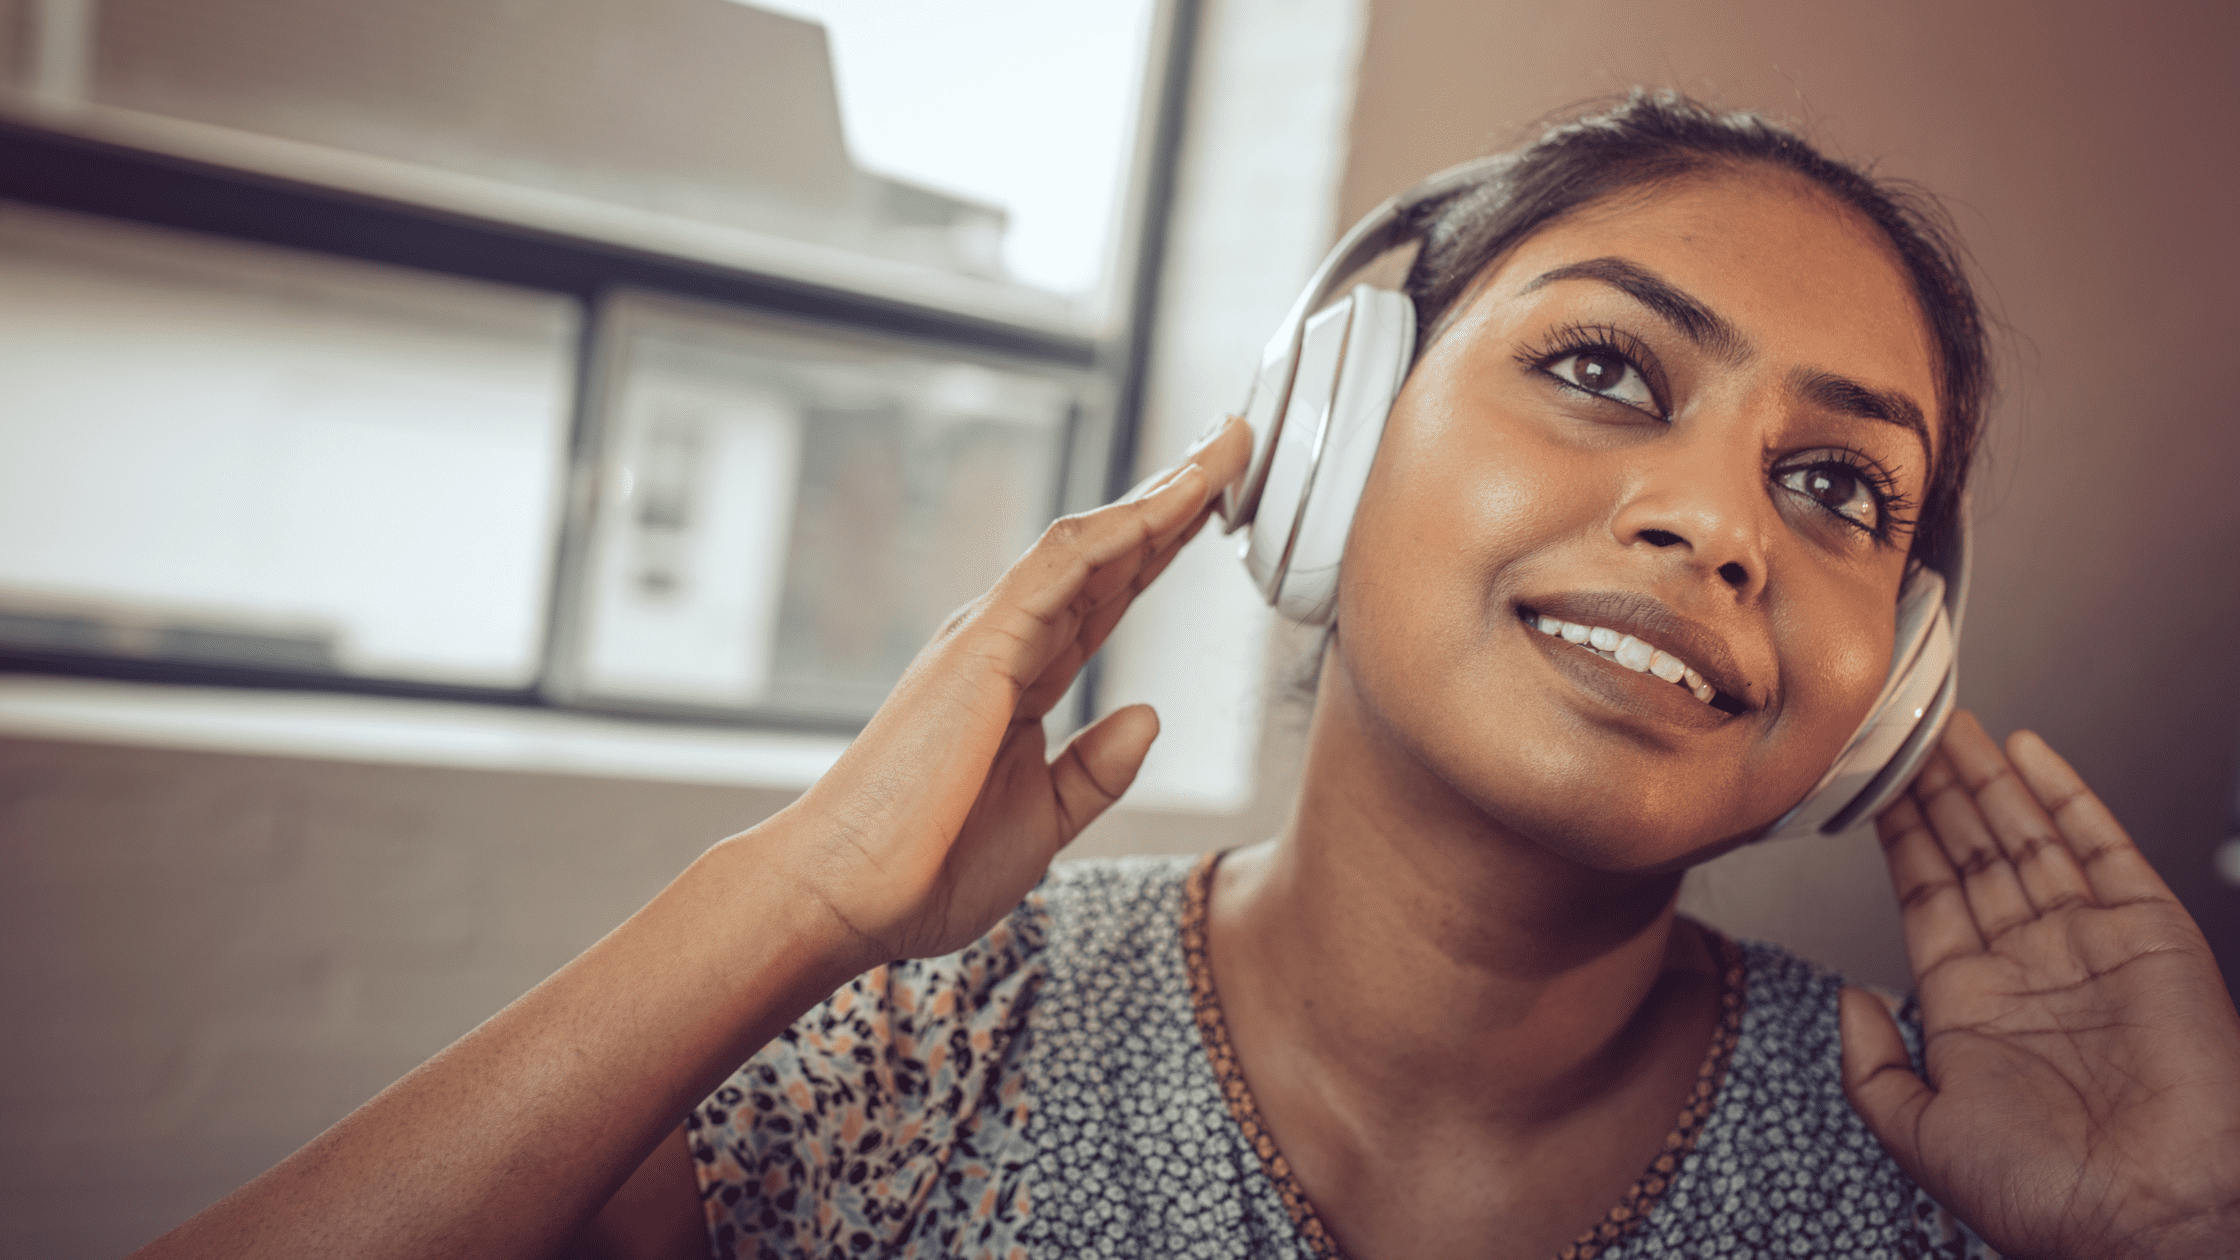 Amazing Audiobooks to Listen